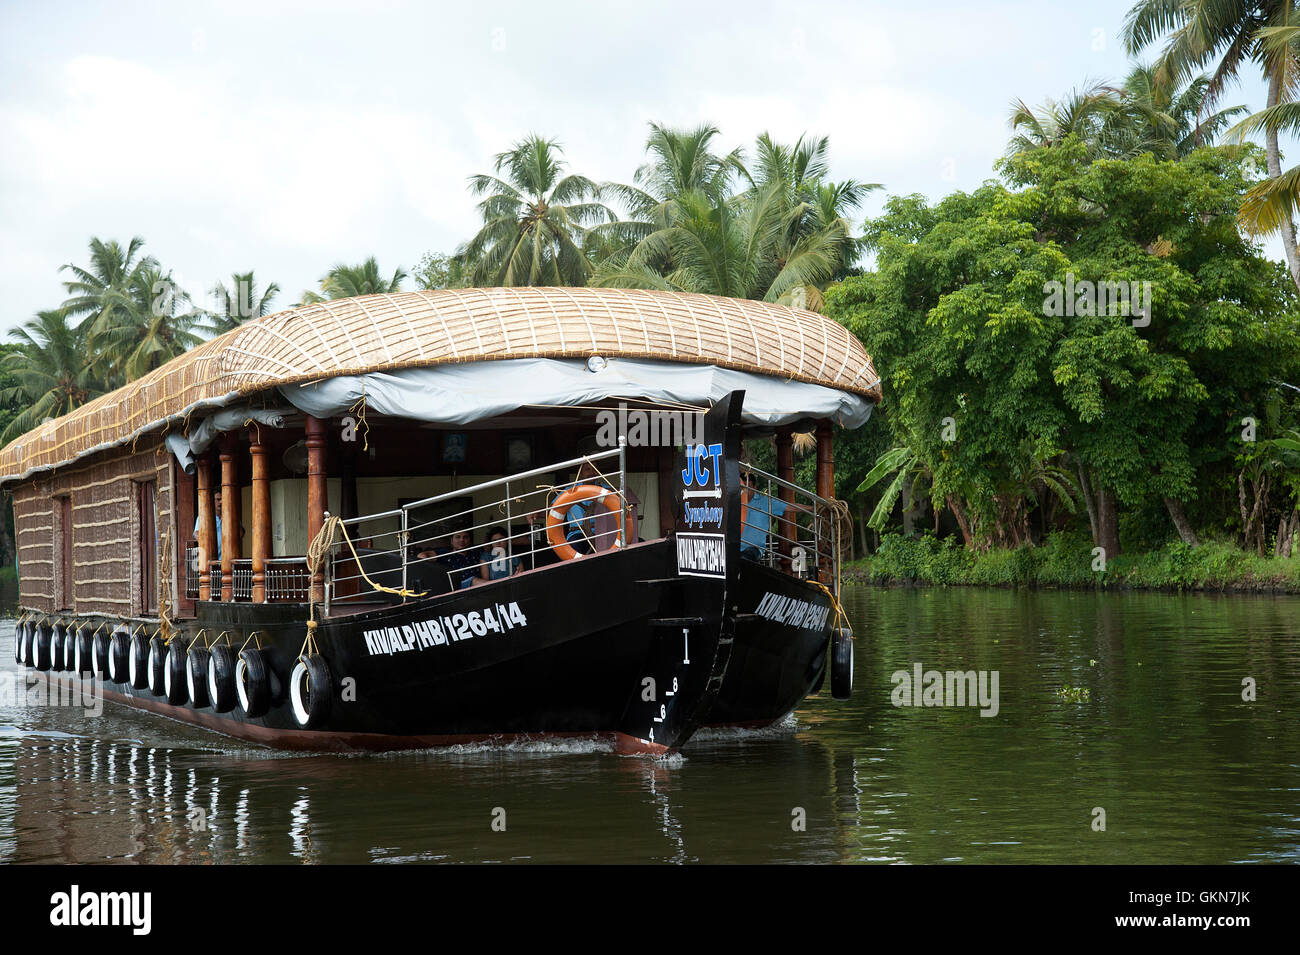 L'image de House Boat dans l'eau dormante de Alleapy, Kerala, Inde Banque D'Images